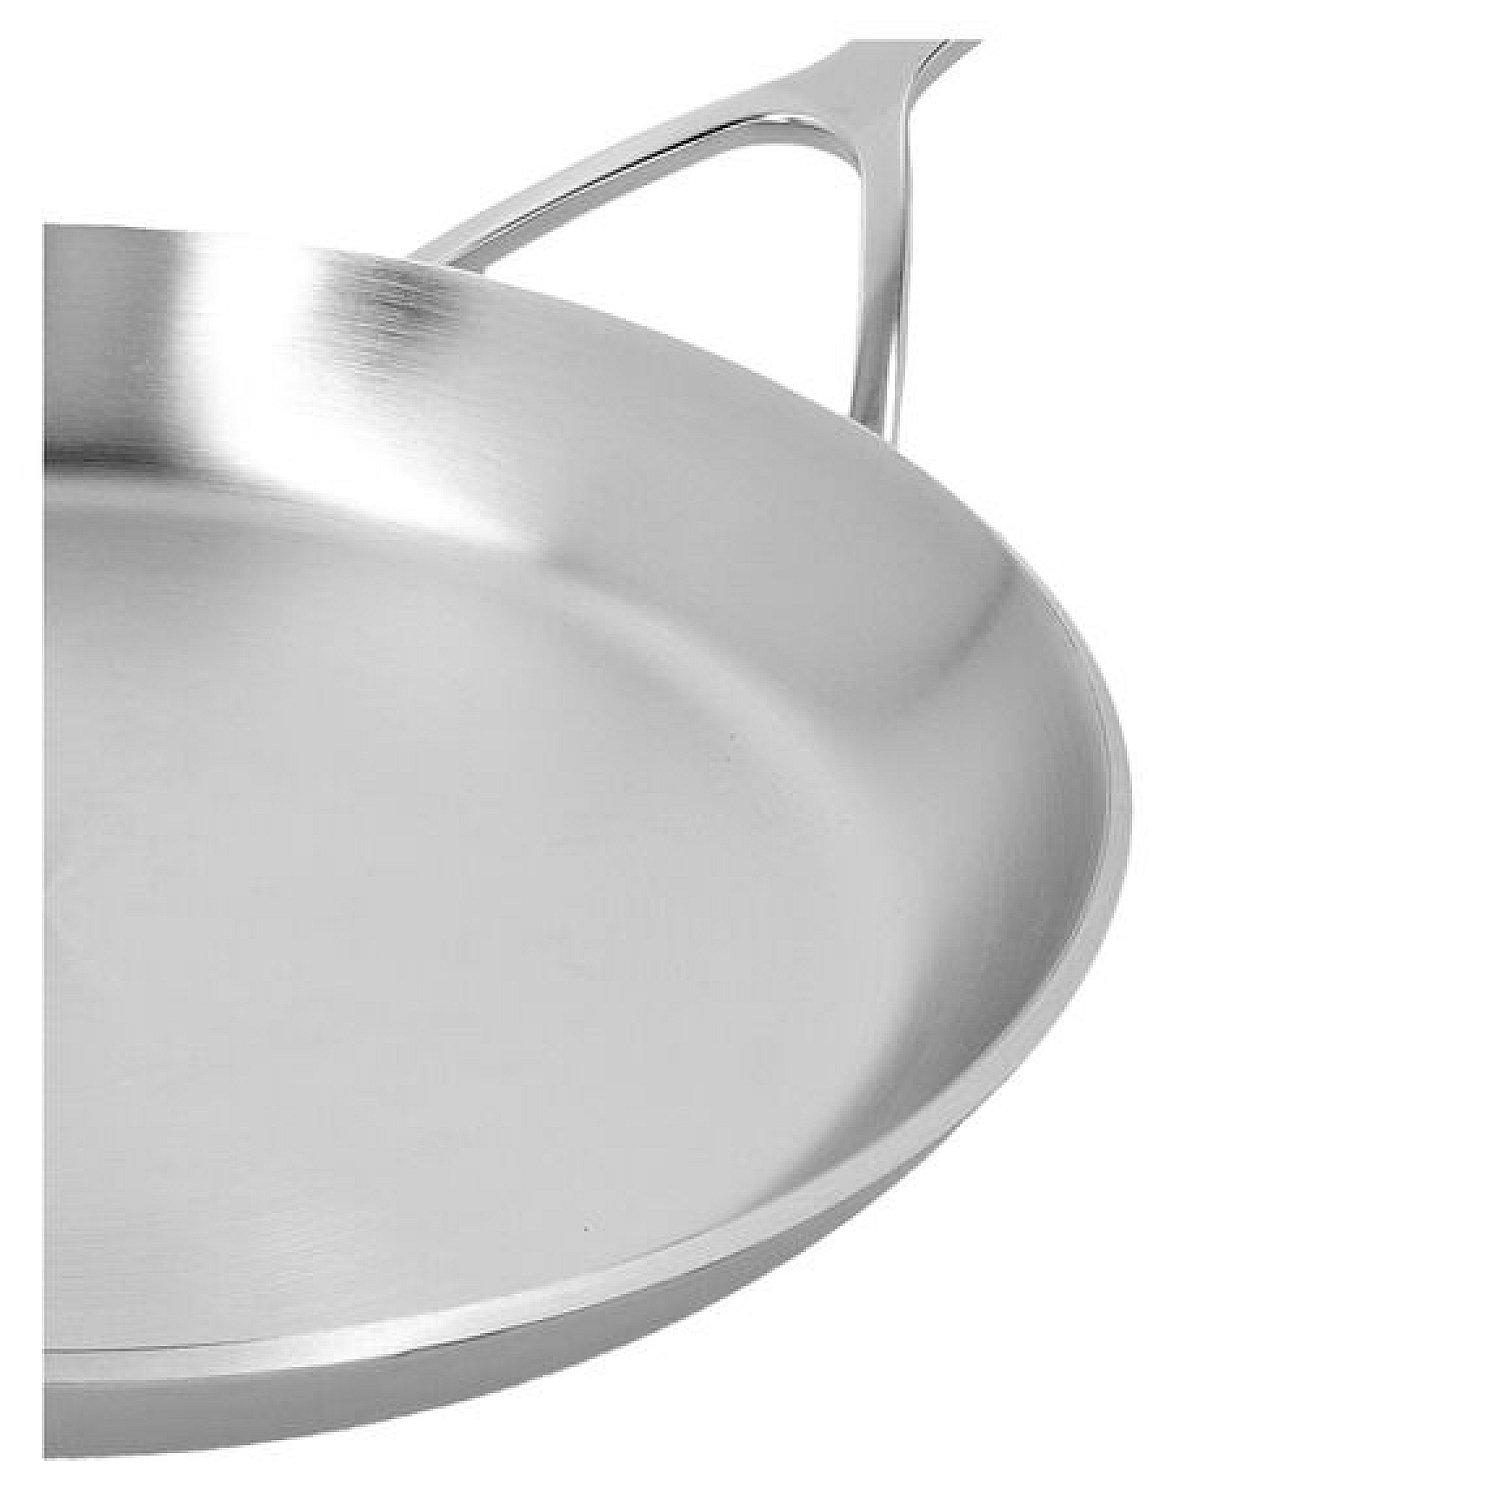 Demeyere Industry 26cm Stainless steel pancake pan